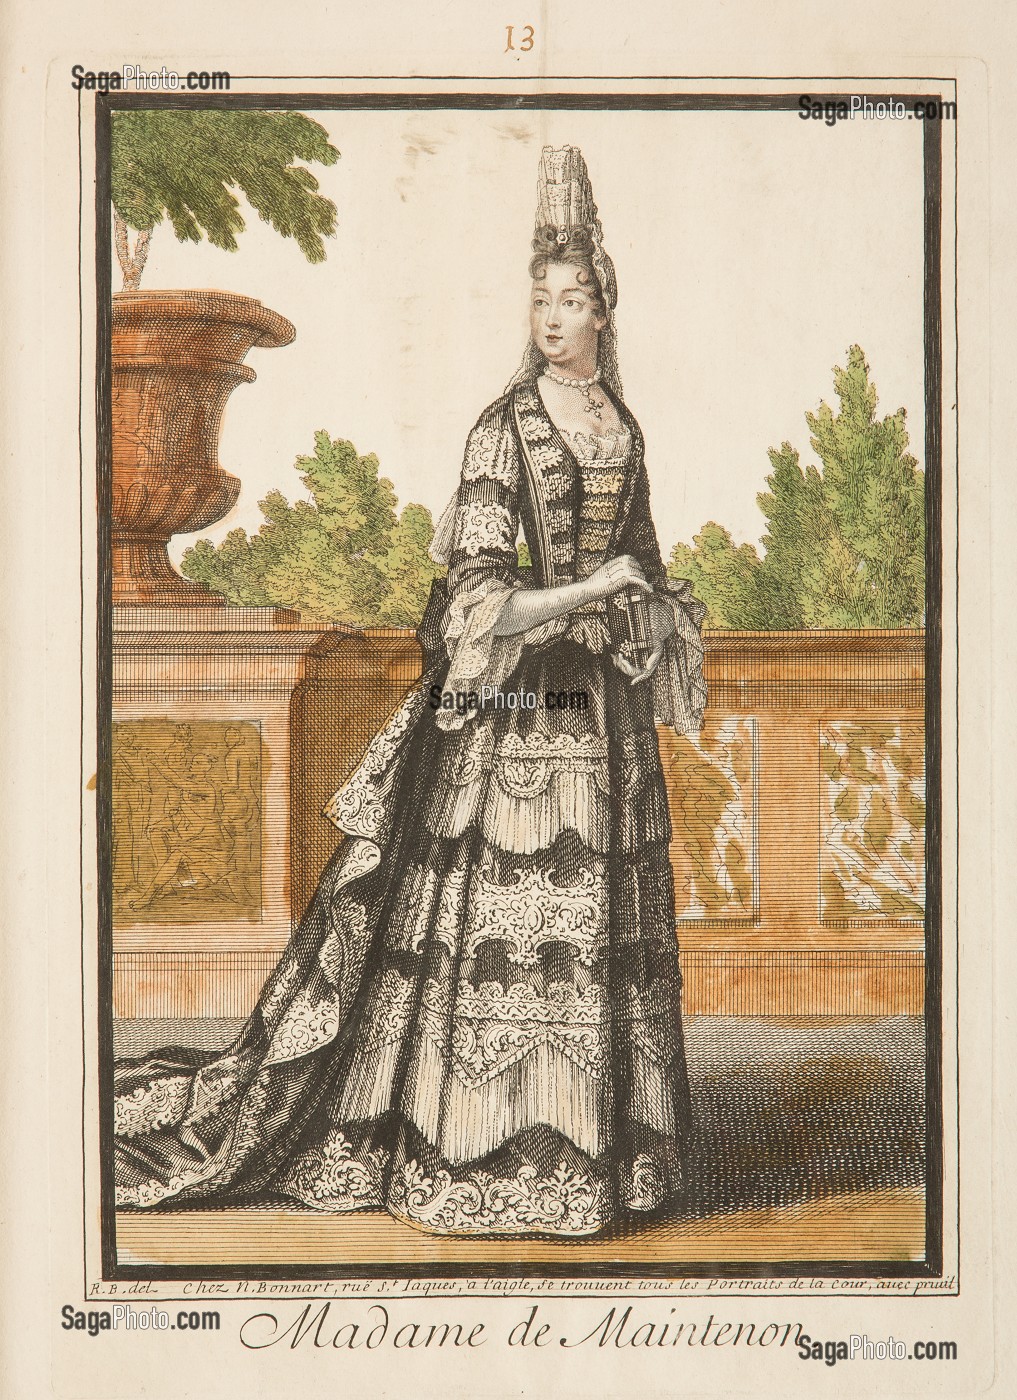 MADAME LA MARQUISE DE MAINTENON (1635-1719), NEE FRANCOISE D'AUBIGNE, GRAVURE EXPOSEE DANS LE COULOIR DES APPARTEMENTS DE MADAME DE MAINTENON, CHATEAU DE MAINTENON, EURE-ET-LOIR (28), FRANCE 